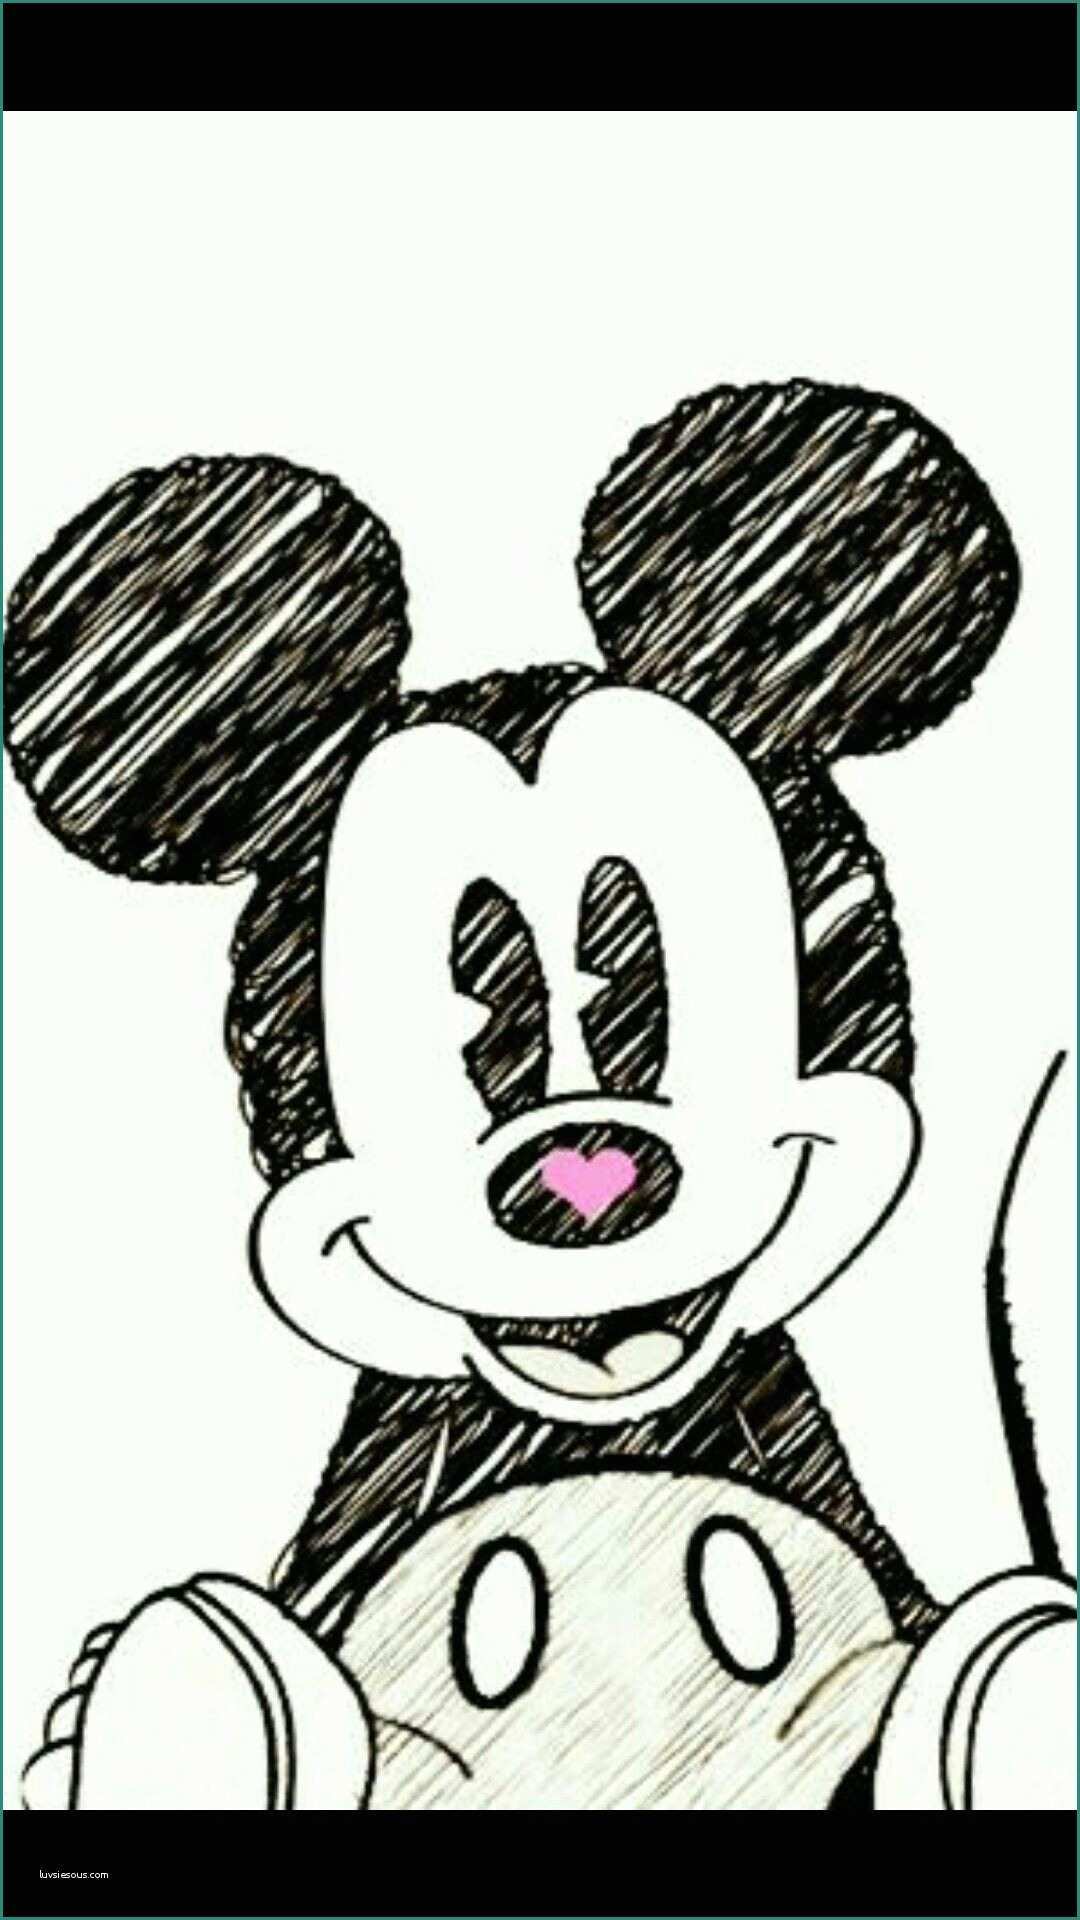 Snoopy Immagini Da Scaricare E Pin Di Karol Ch B Su Mickey Mouse